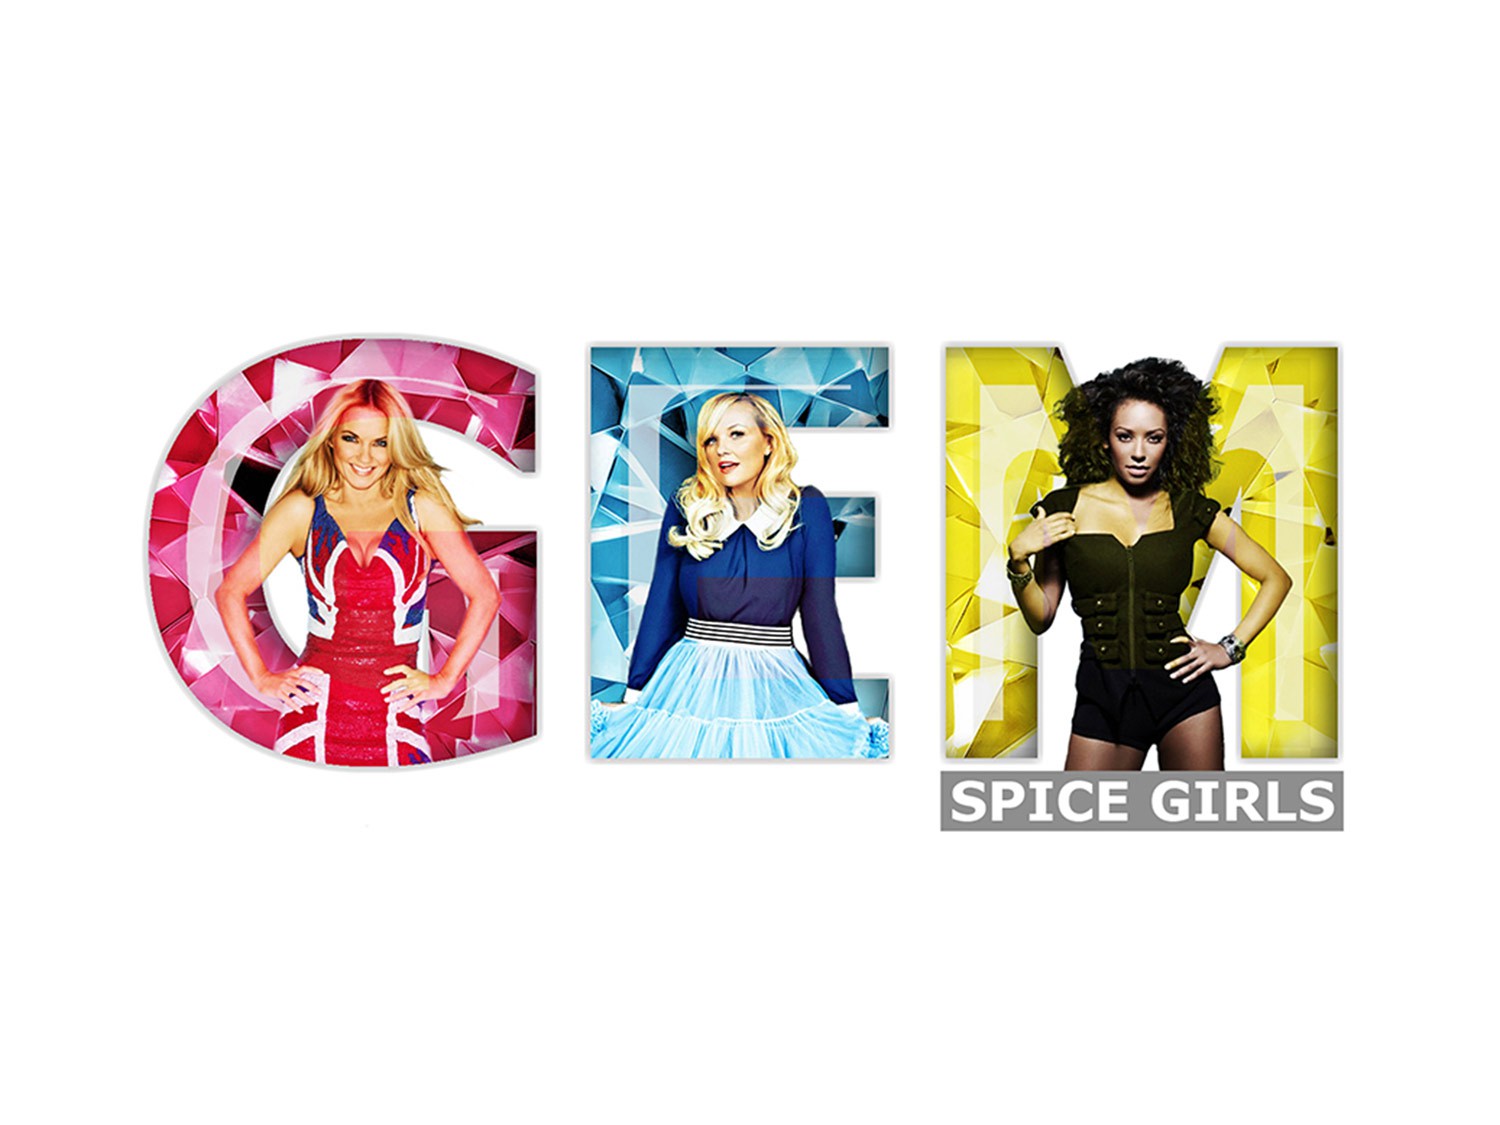 Песня girl song. Spice girls альбомы. Spice girls обложки для песен. Spice girls "Greatest Hits".